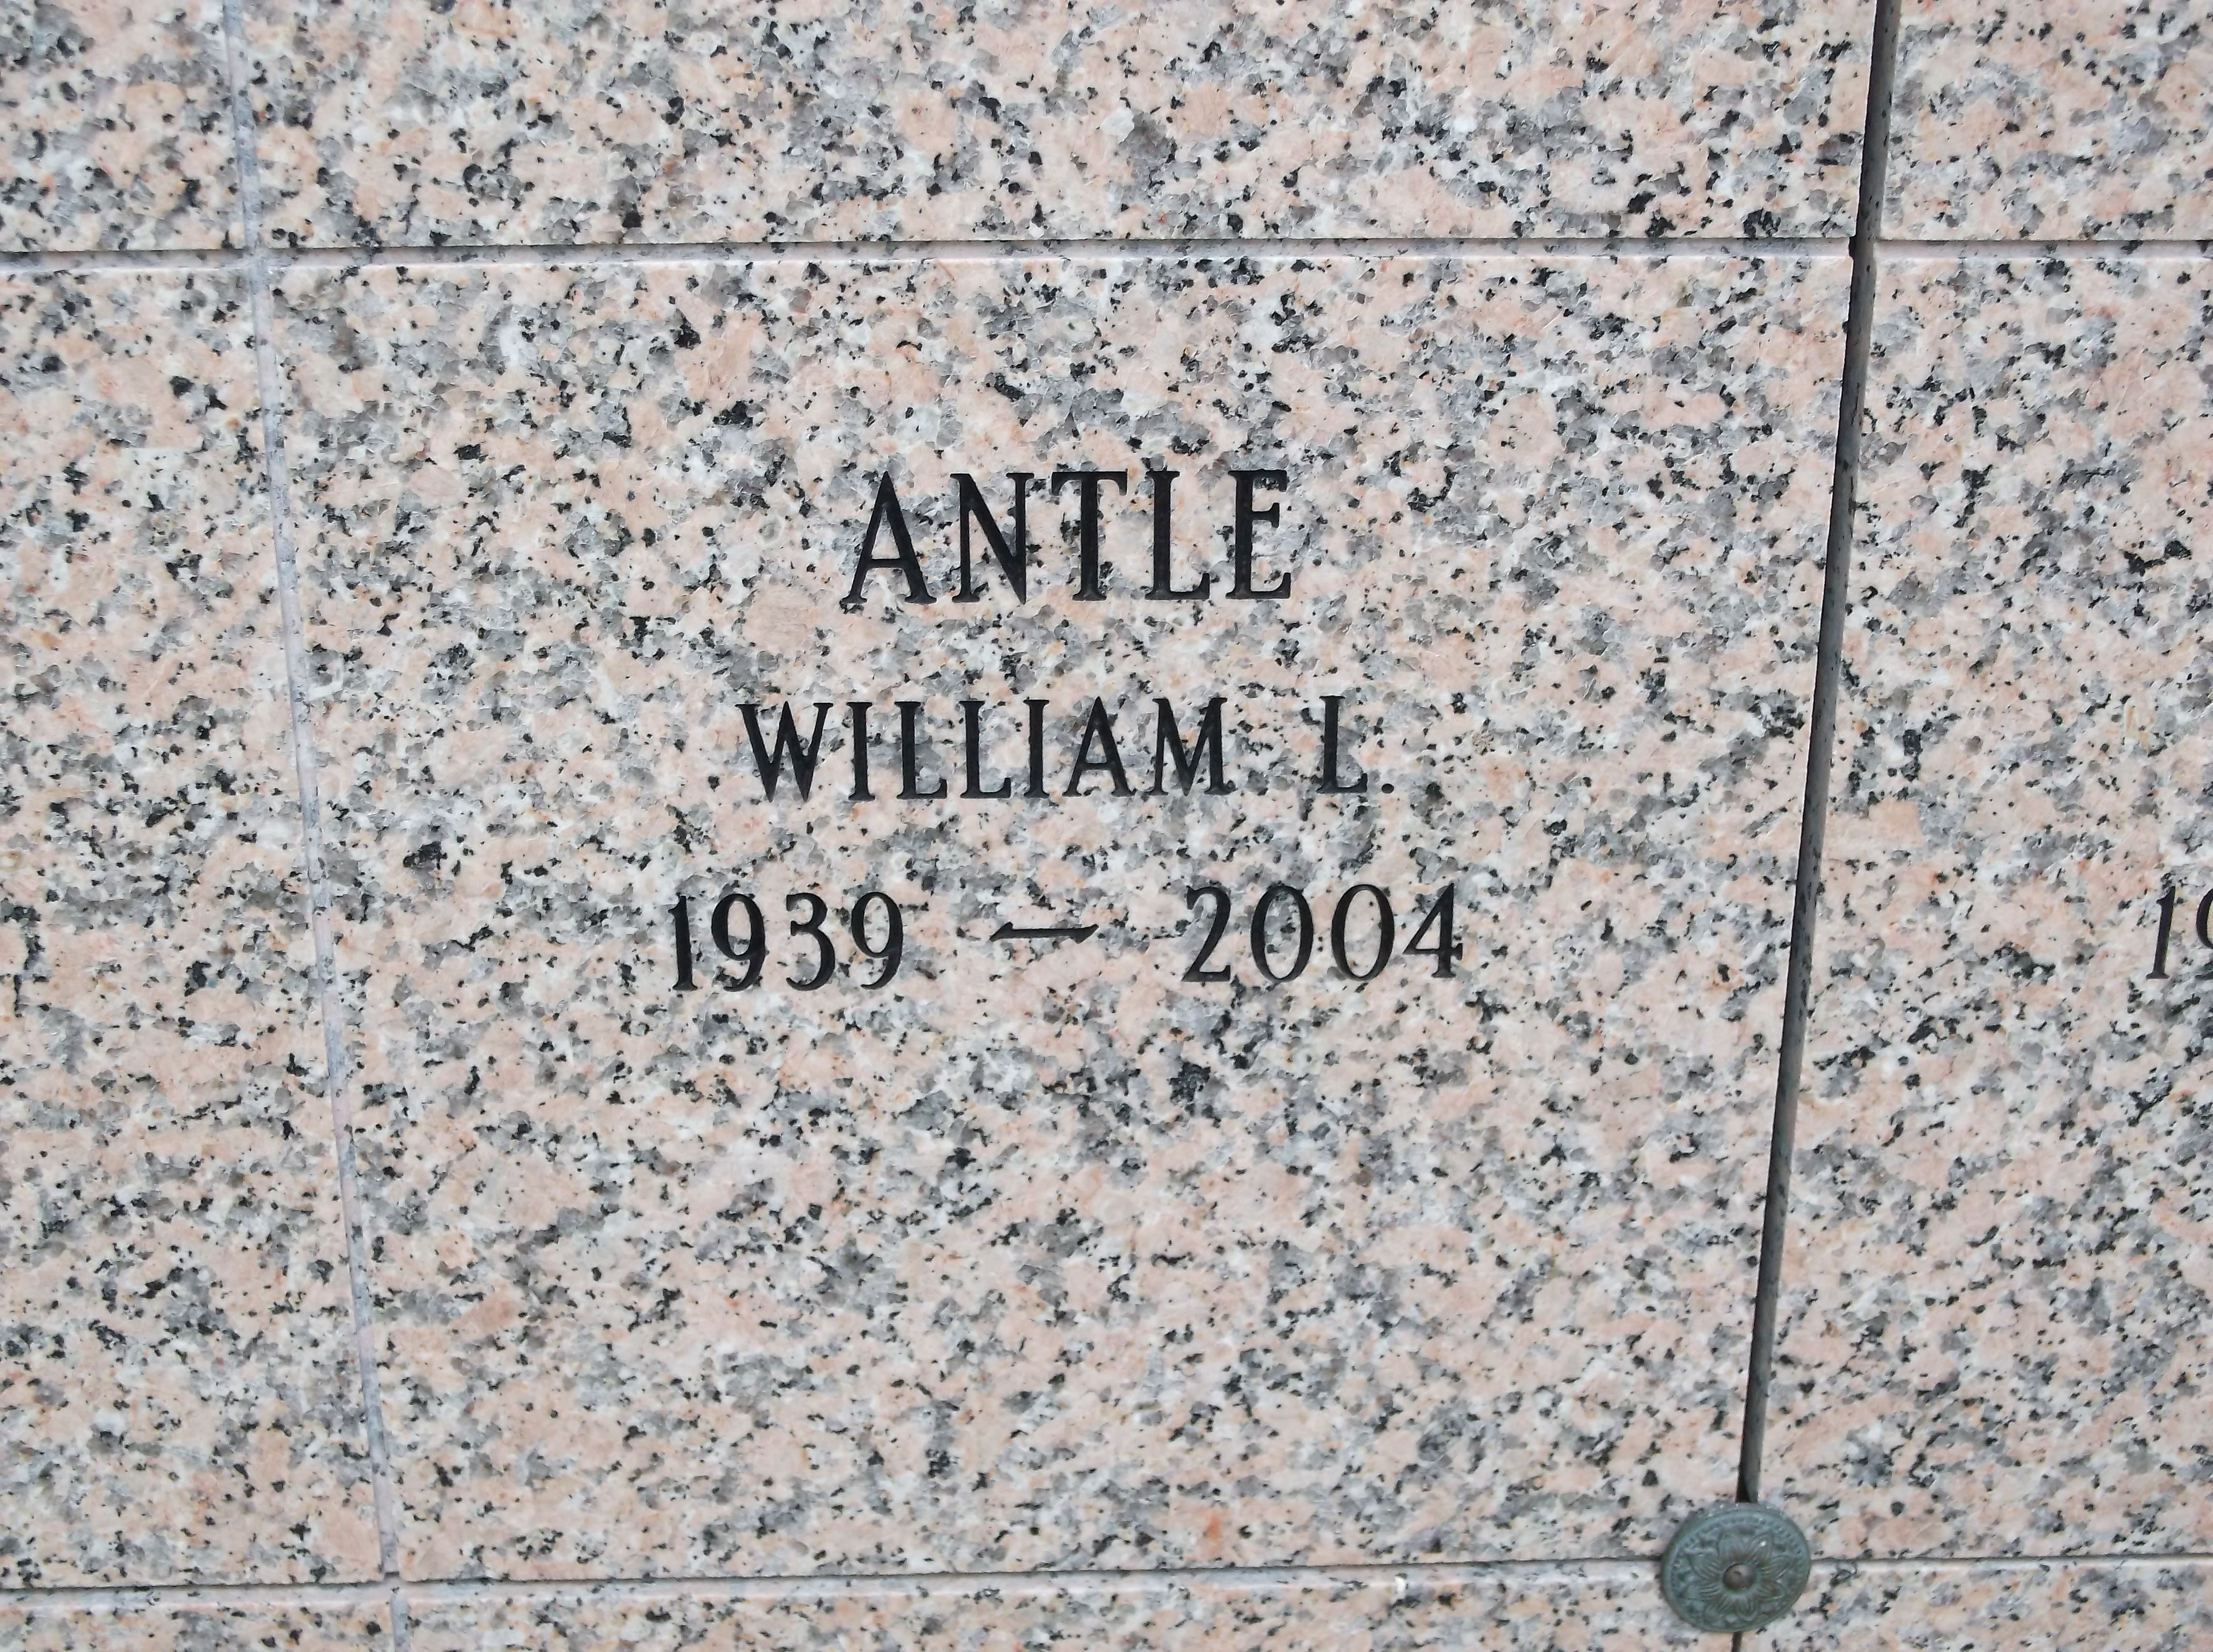 William L Antle